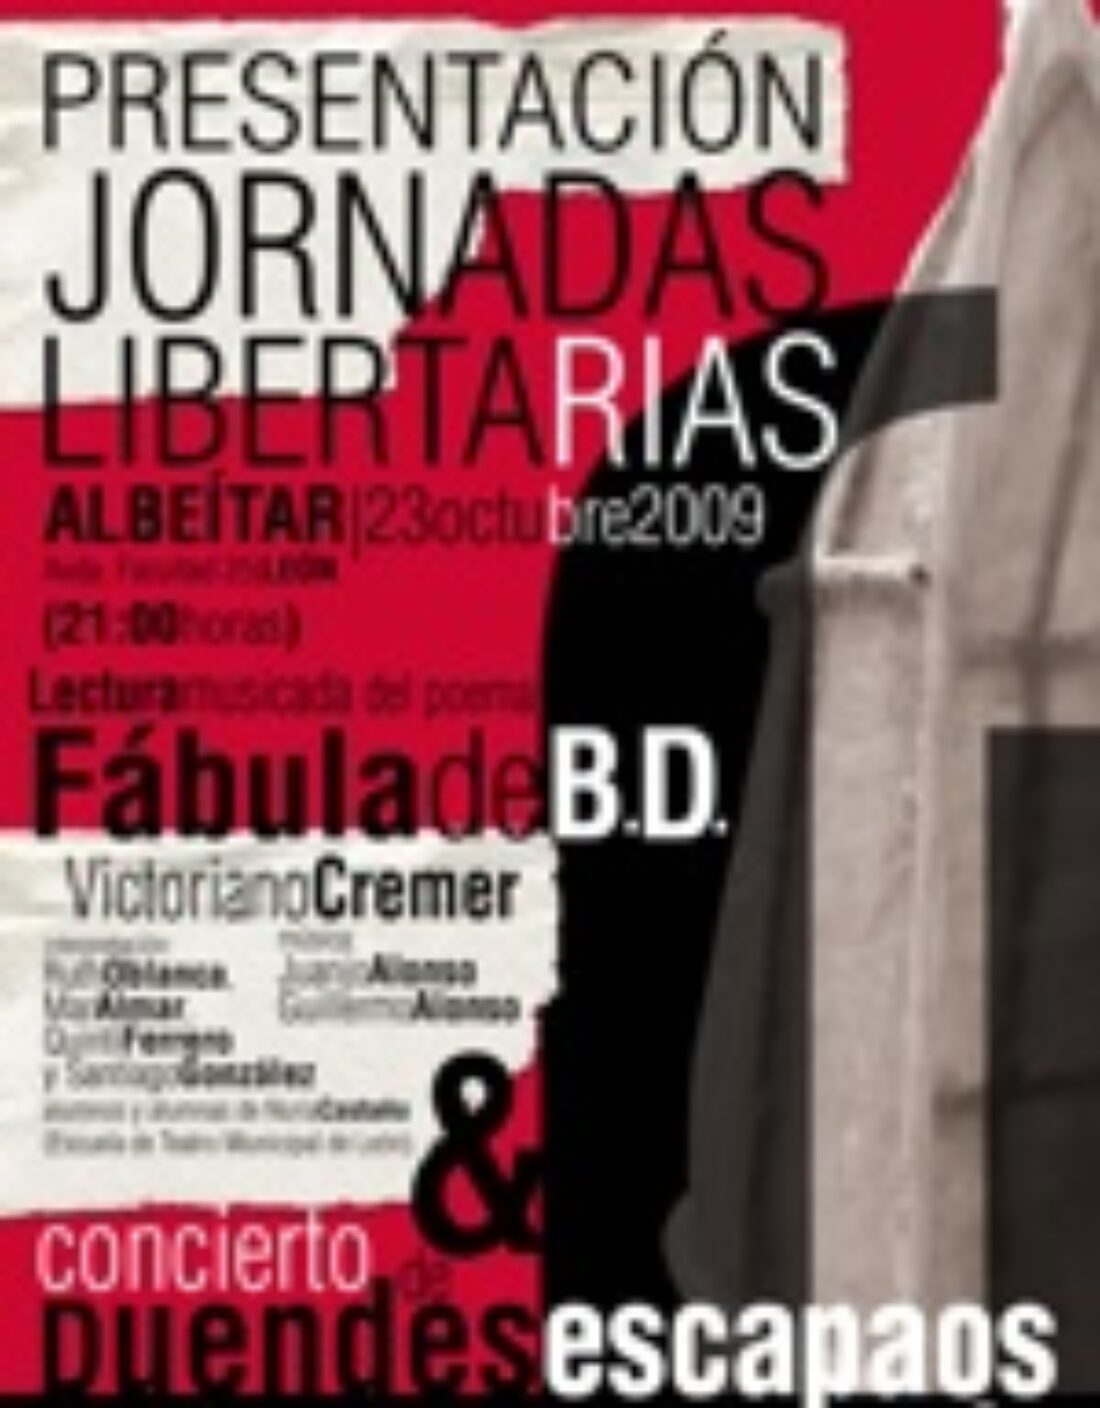 23 octubre, León : Presentación Jornadas Libertarias